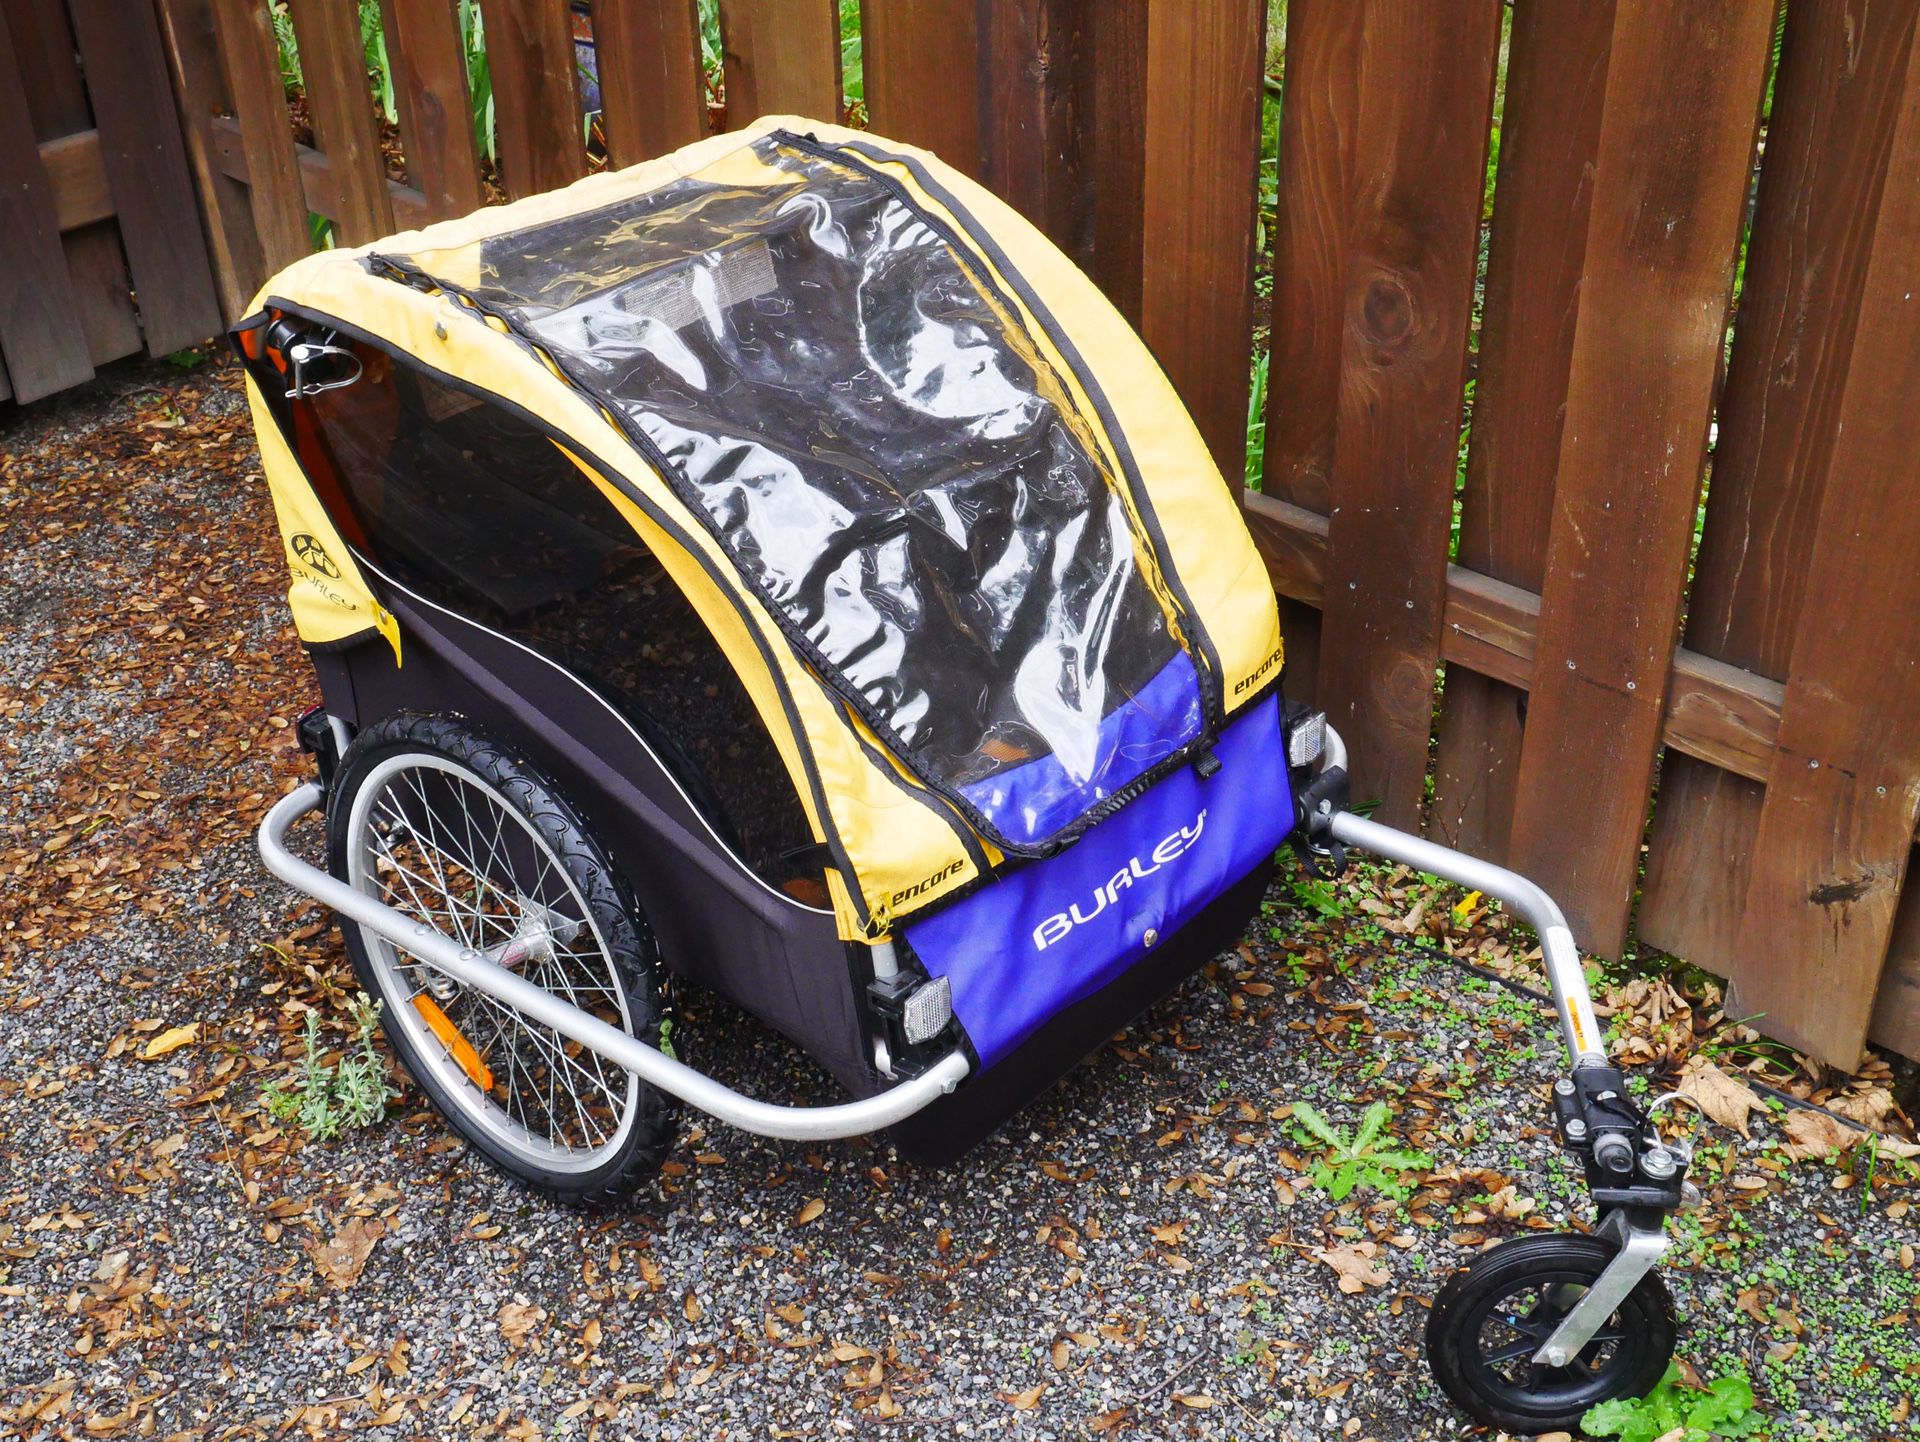 Burley d’light kids bike trailer/stroller